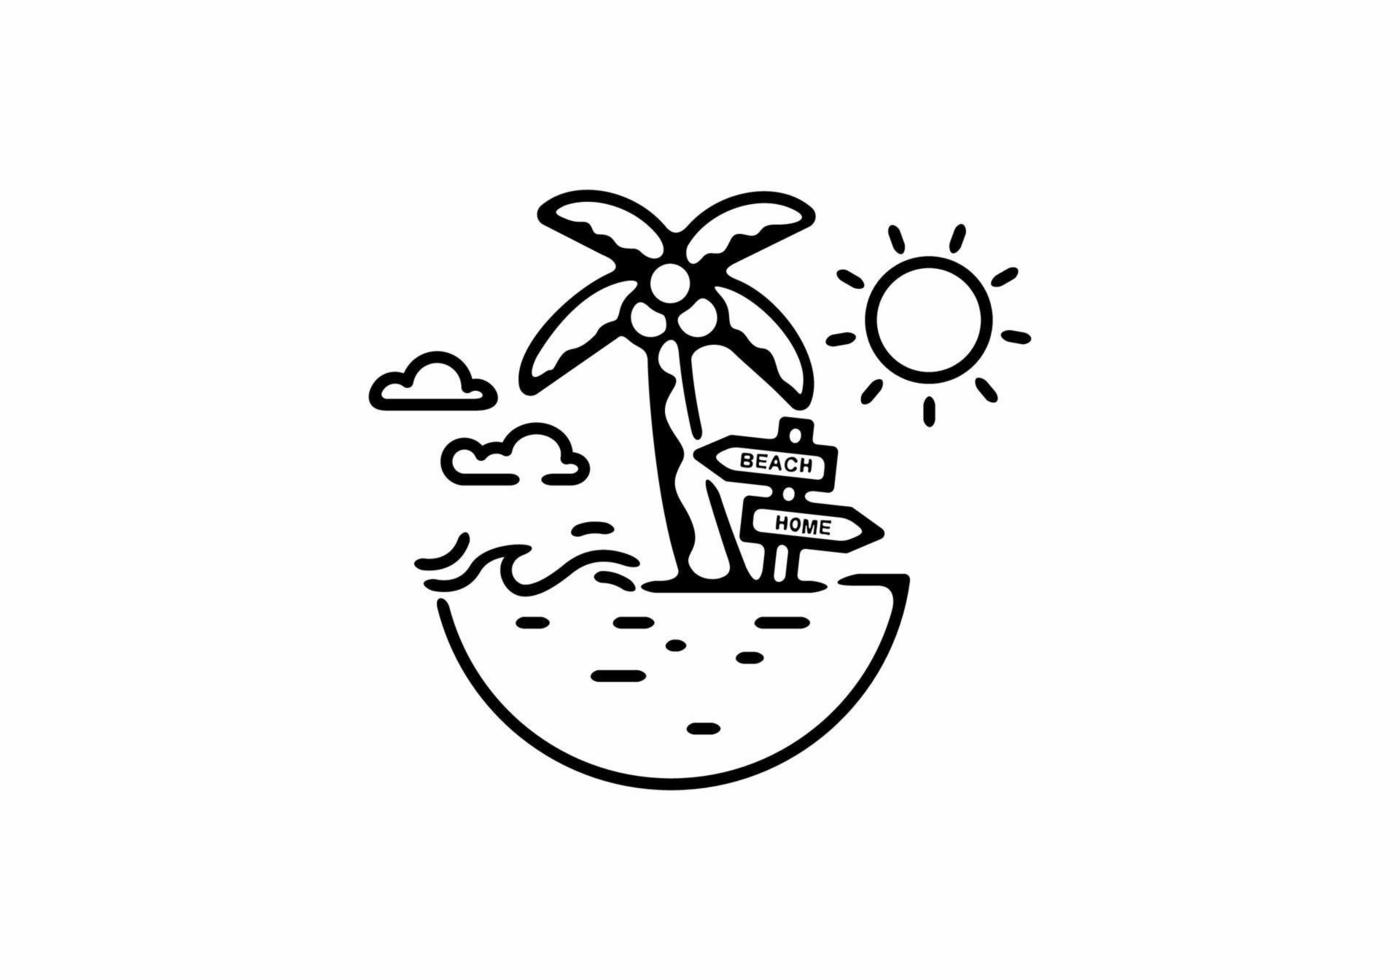 zwarte lijntekeningen van strandillustratie met kokospalmen vector